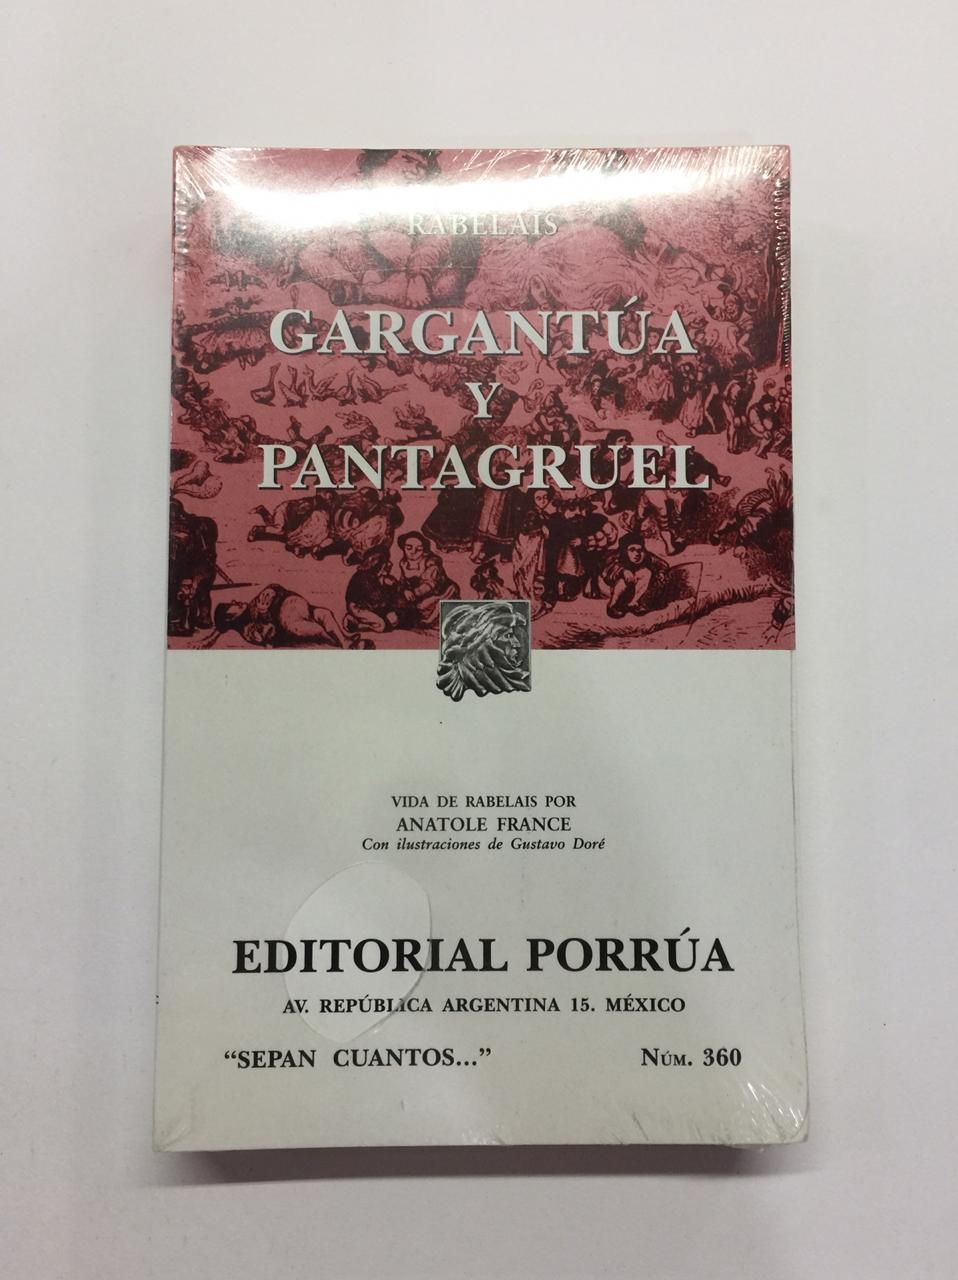 LIBRO GARGANTUA Y PENTAGRUEL RABELAIS